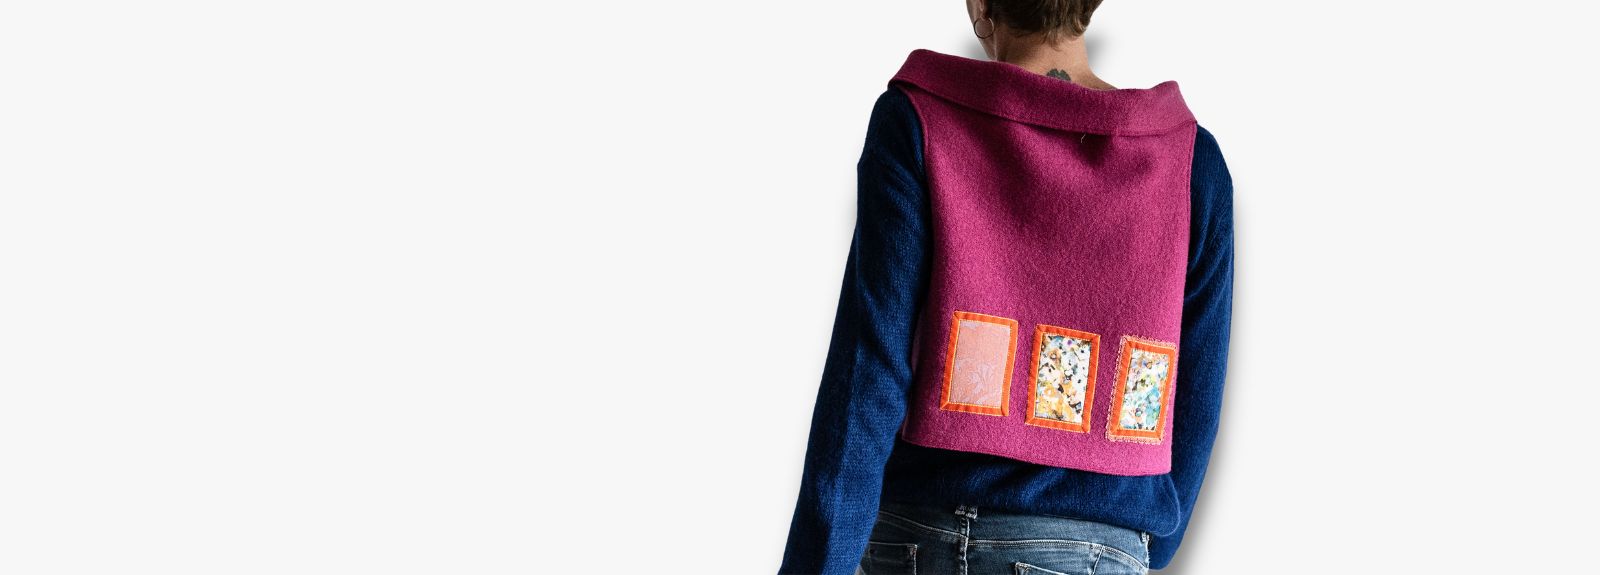 Vente en ligne gilet laine création de mode créatrice en bretagne